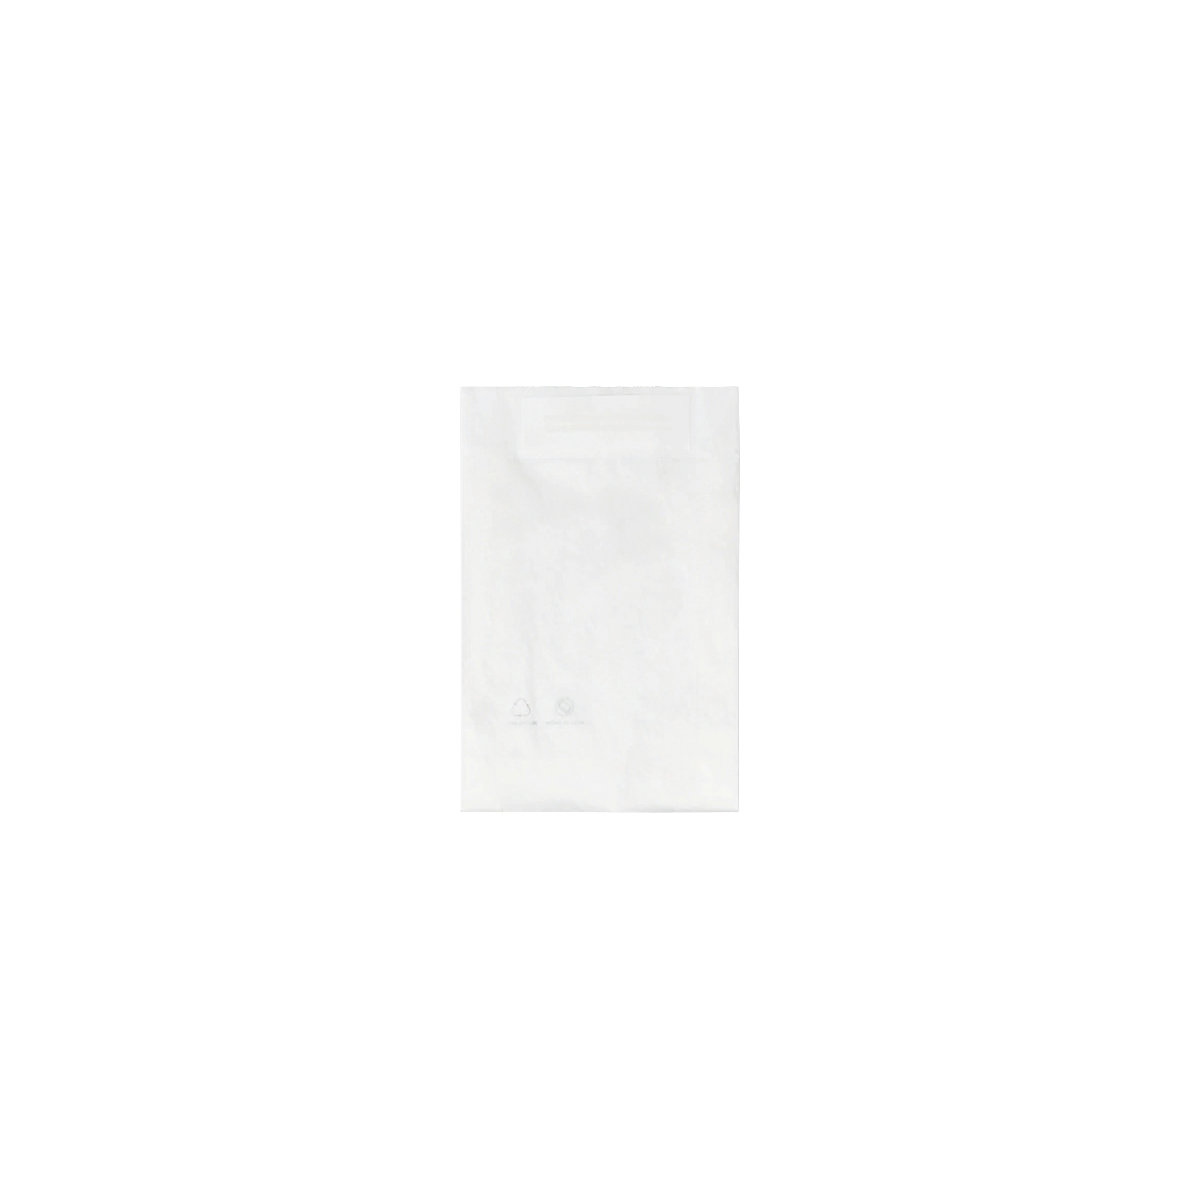 Flachbeutel mit Haftstreifen terra, aus Pergaminpapier, LxB 200 x 150 mm, VE 250 Stk-1